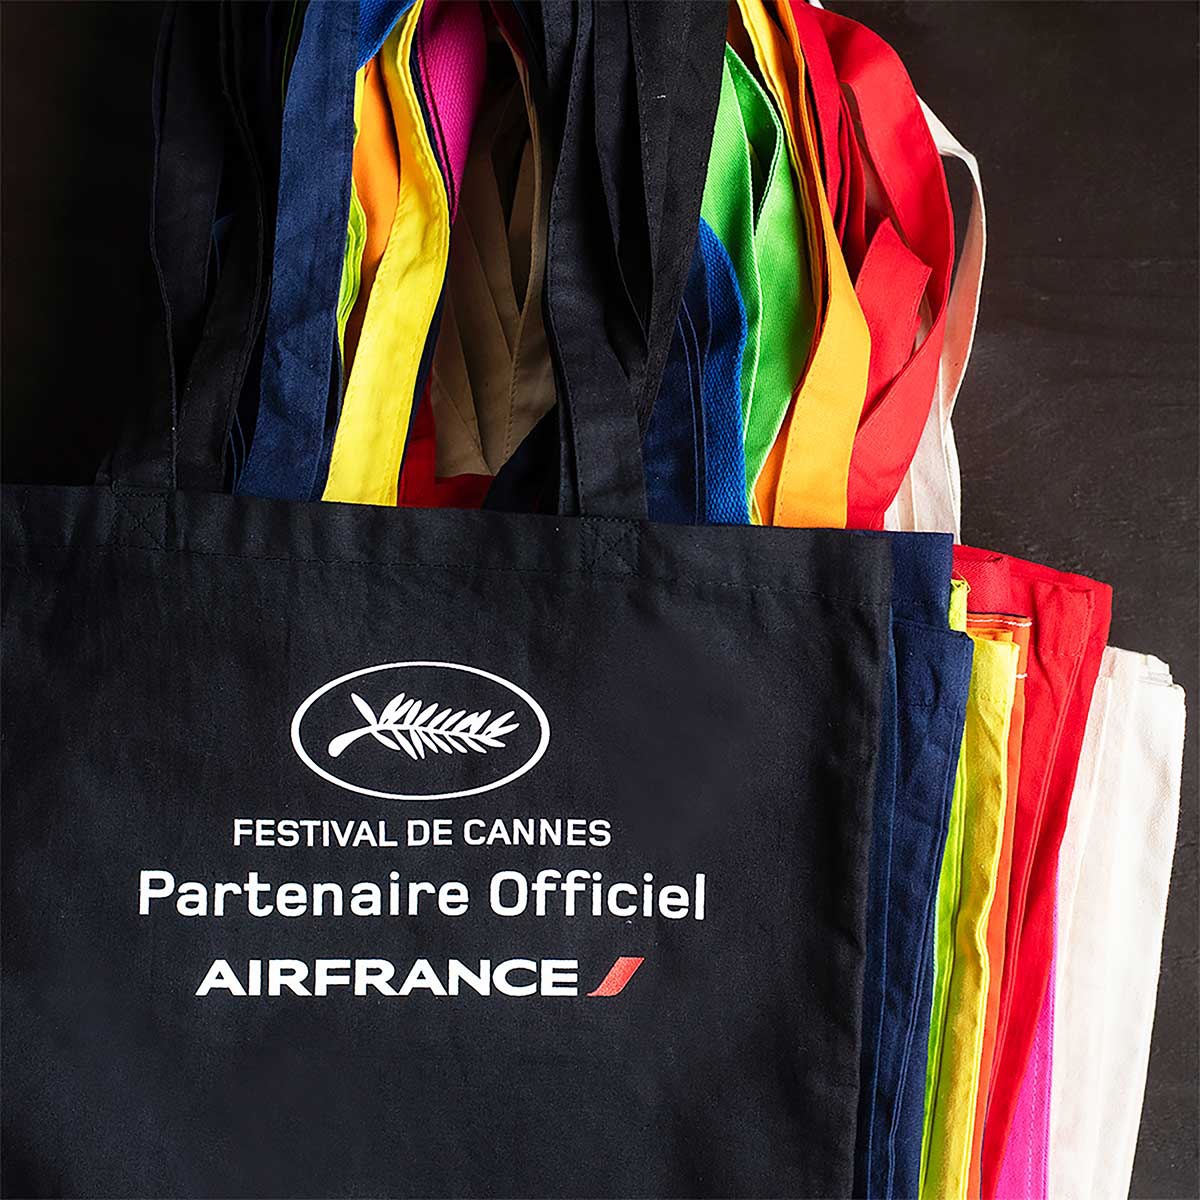 REUSE求めて世界へ飛ぶ　エールフランスのロゴが入った、カンヌ映画祭のエコバッグ。他にも映画祭のバッグを数多く販売した